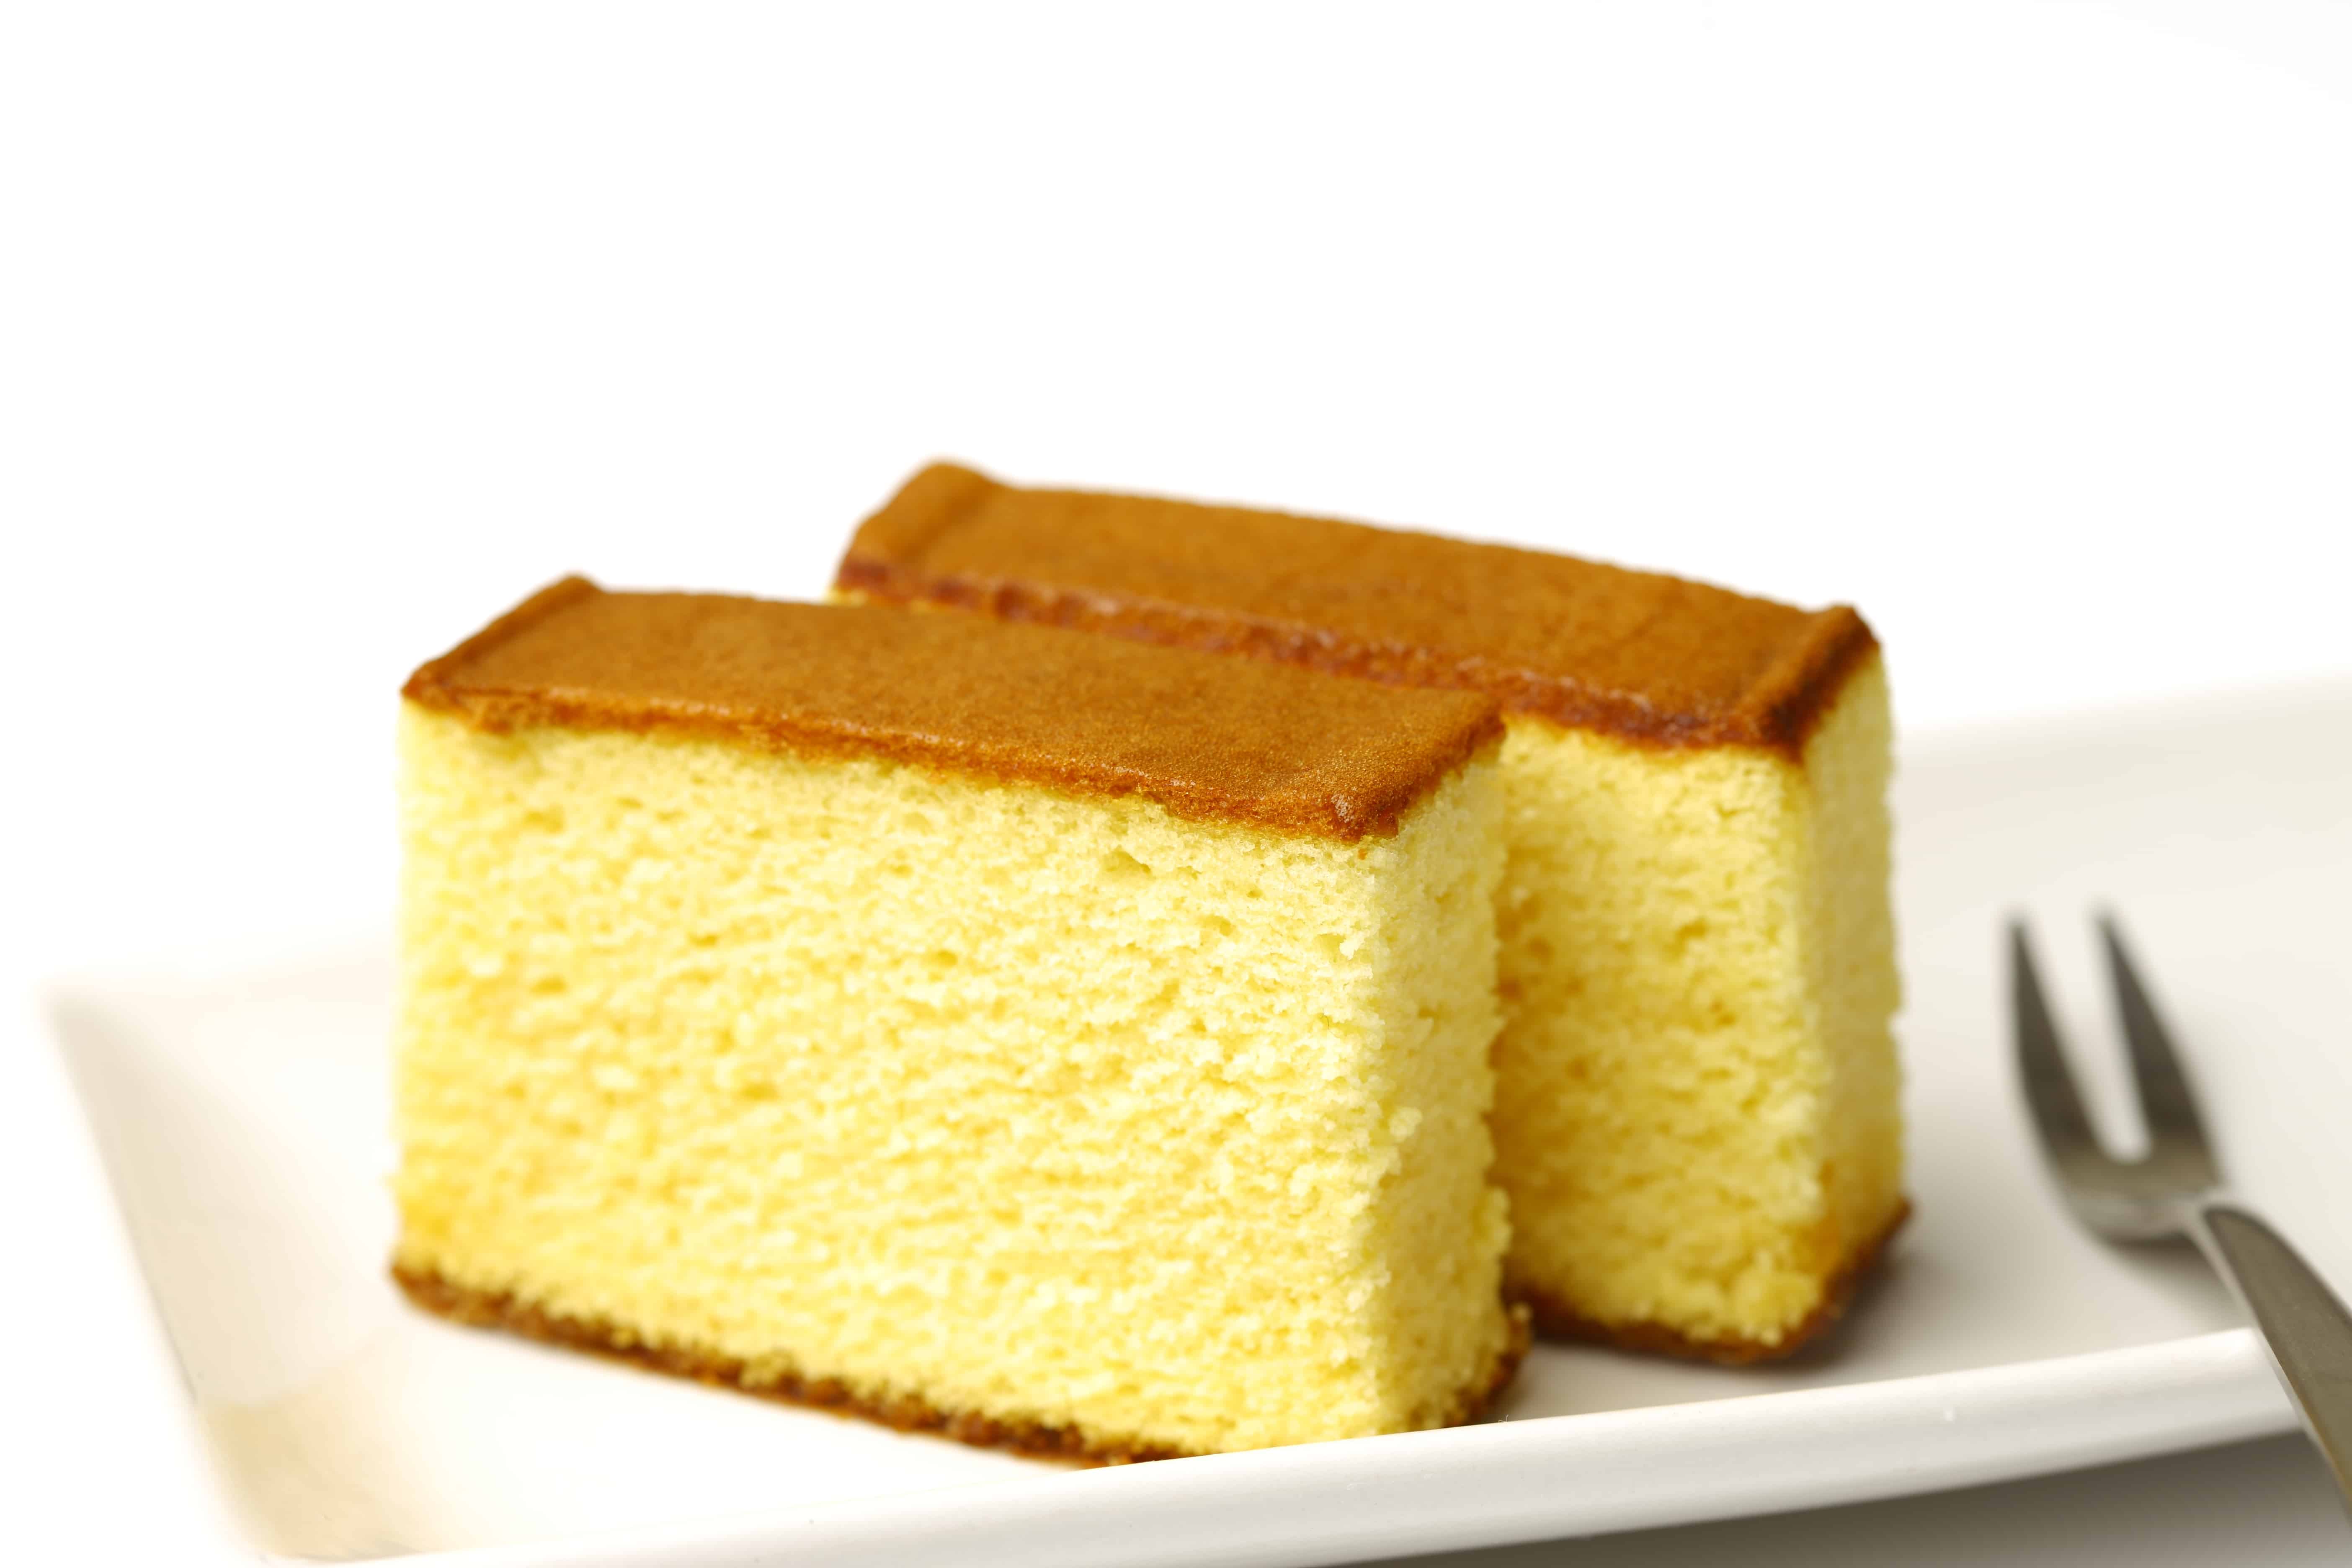 Sponge Cake from Any Cake Box Mix - Akram's Ideas Ep. 05 - YouTube